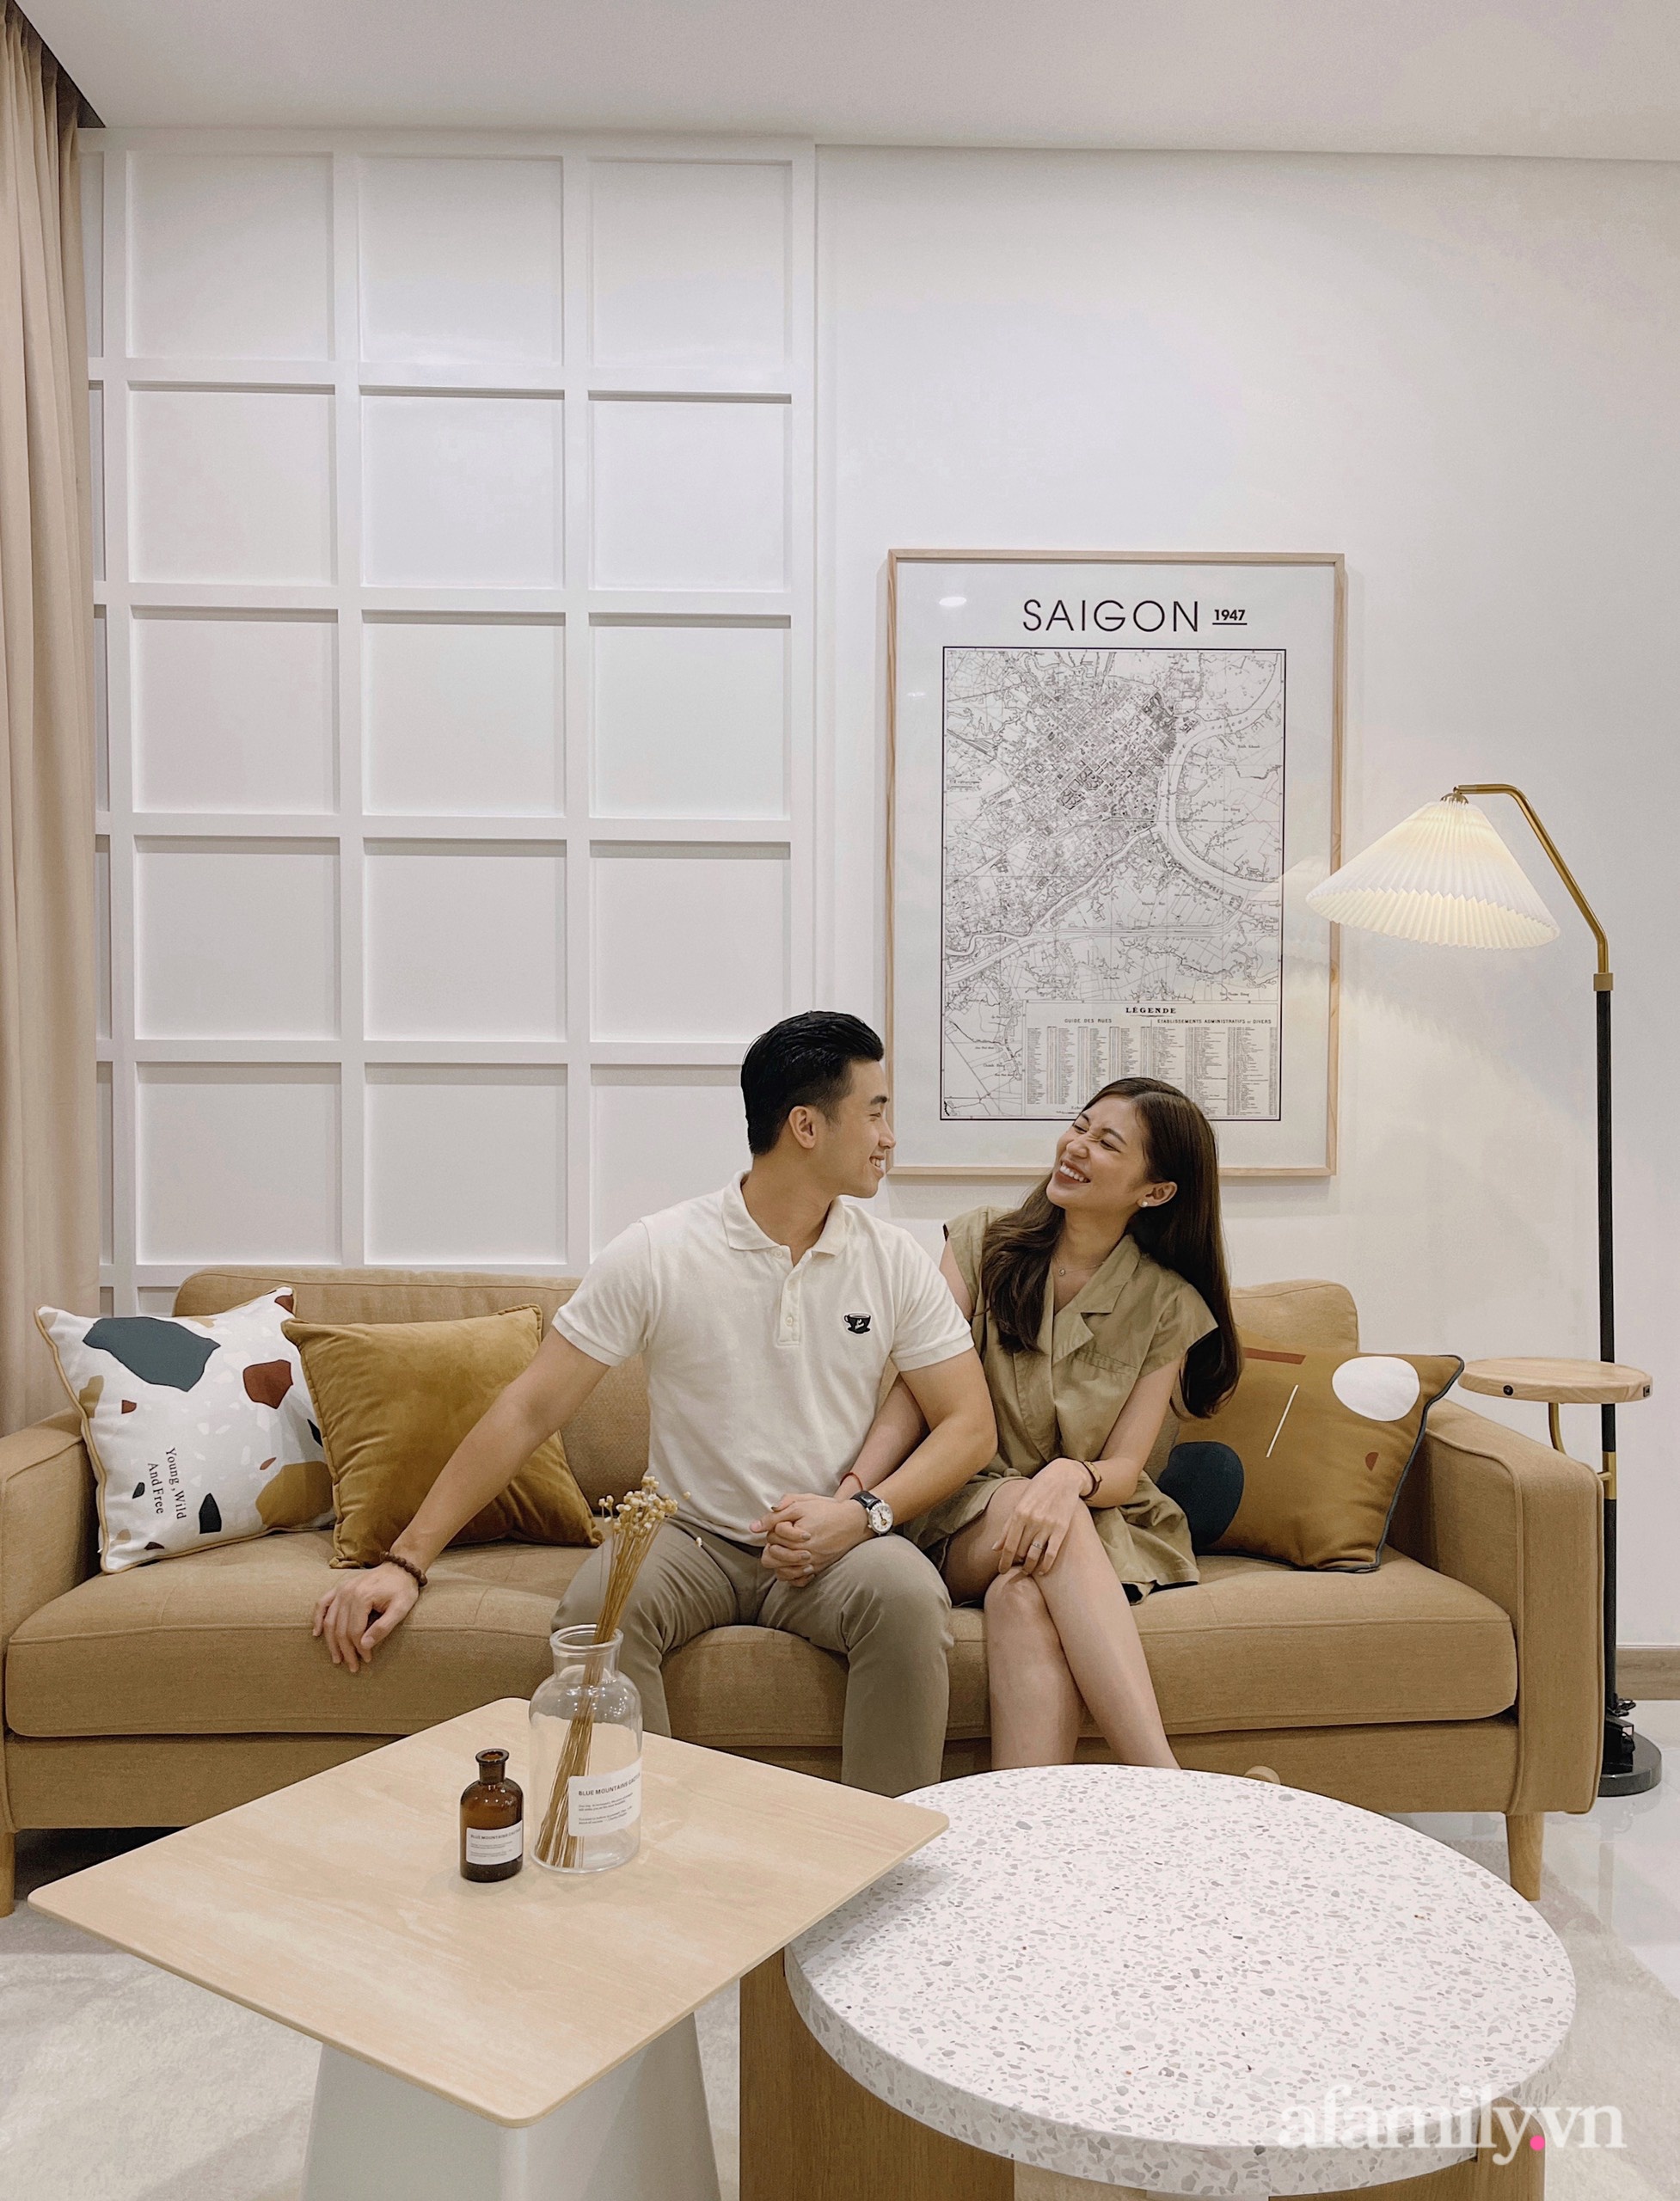 Căn hộ 106m² gói trọn bình yên với tông màu trung tính hiện đại của vợ chồng trẻ Sài Gòn - Ảnh 1.